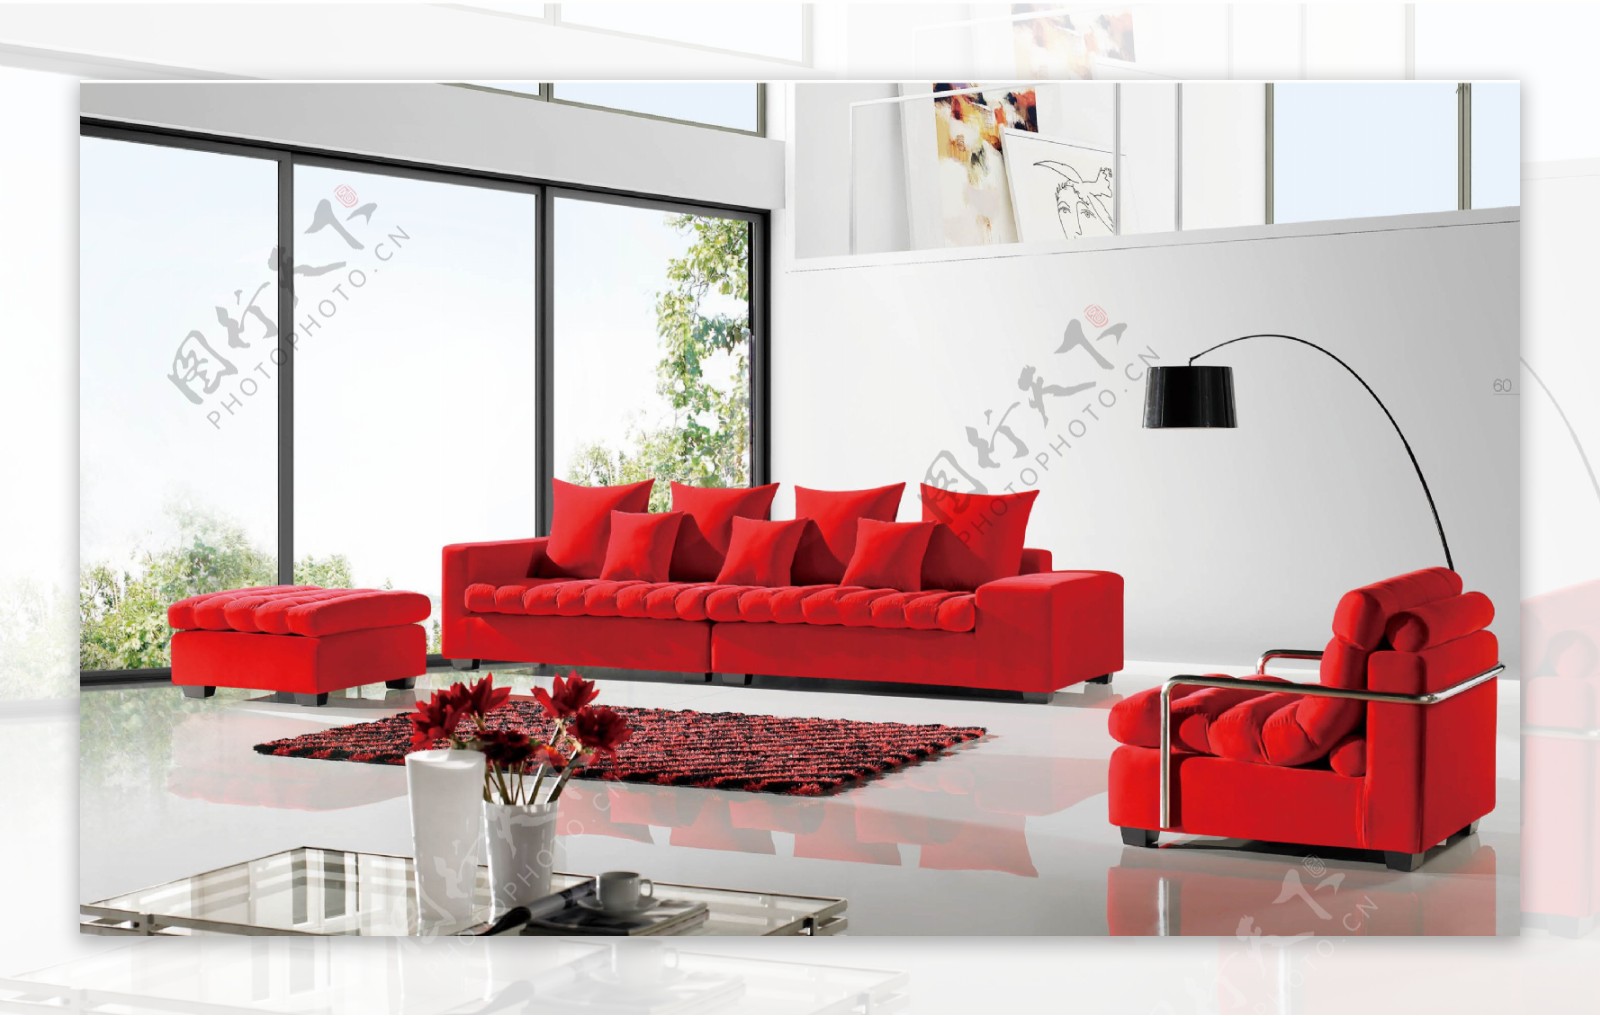 大红色沙发设计